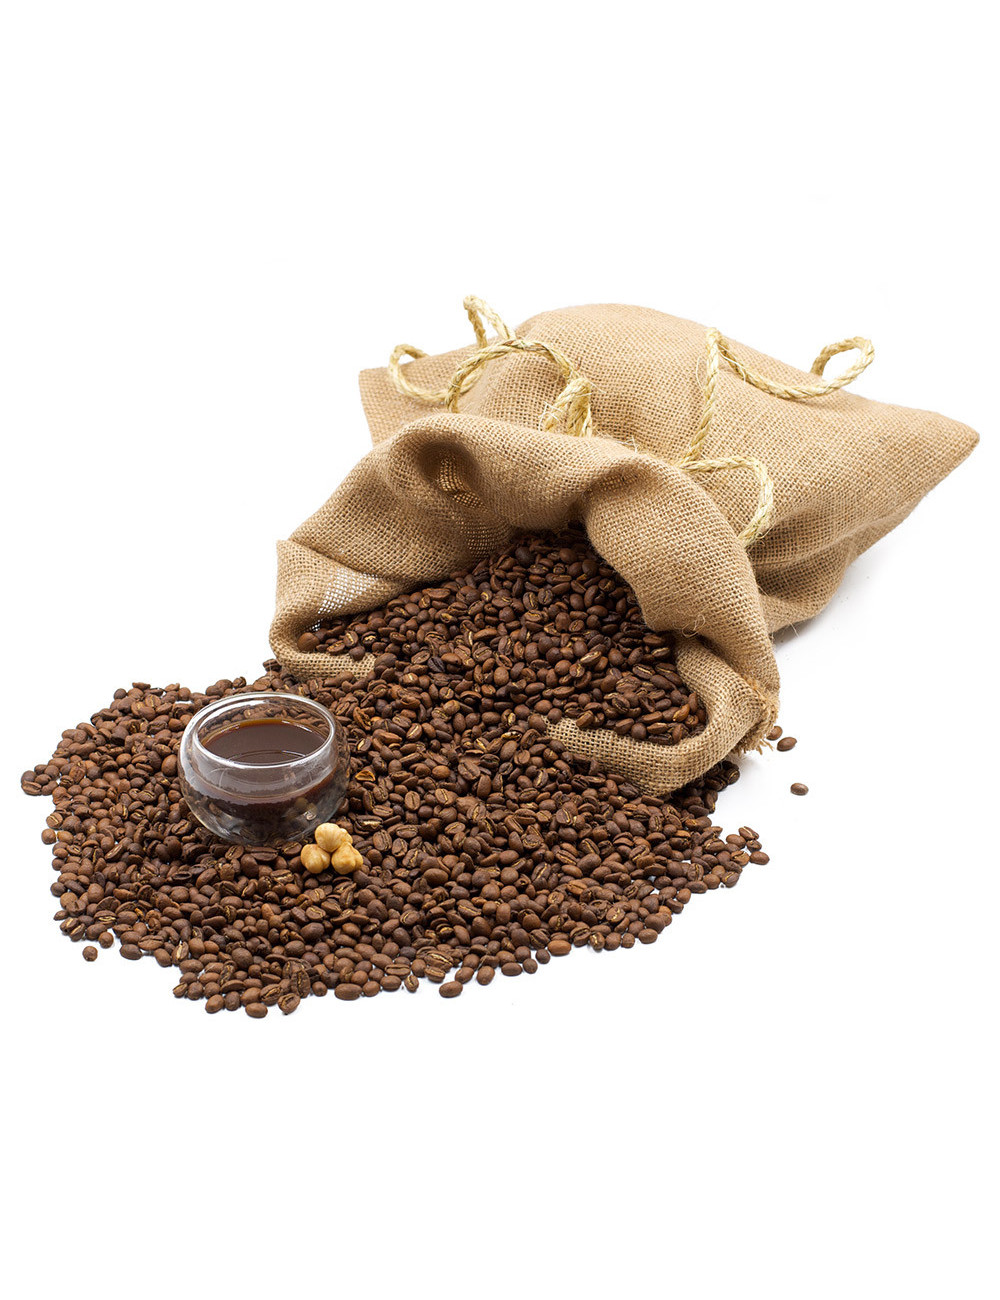 Caffè alla Nocciola aromatizzato - La Pianta del Tè shop online